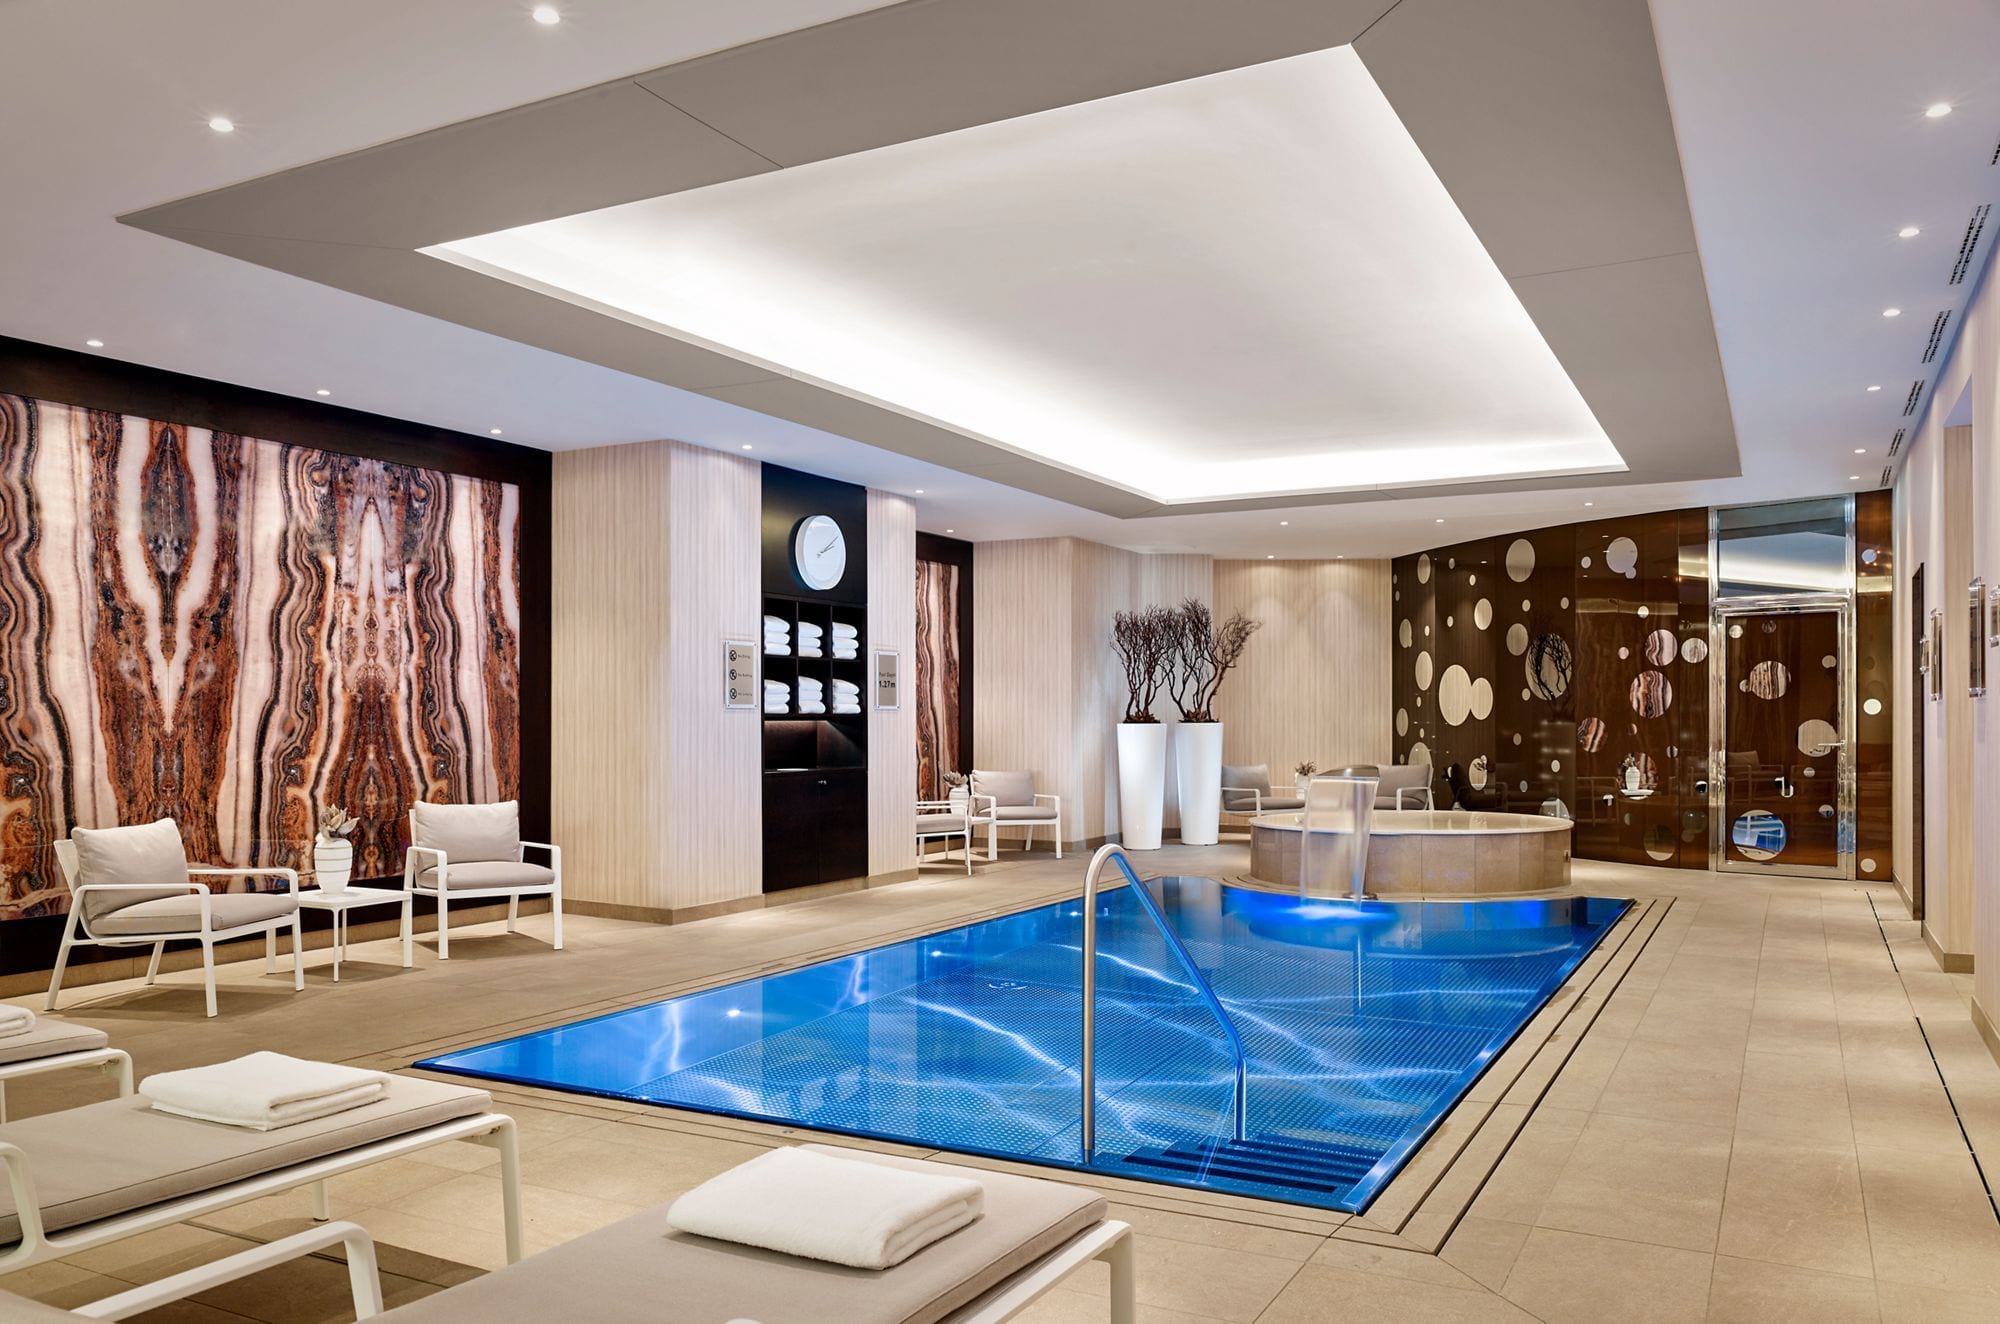 Přelivný nerezový bazén IMAGINOX v hotelu Ritz Carlton v Berlíně | IMAGINOX